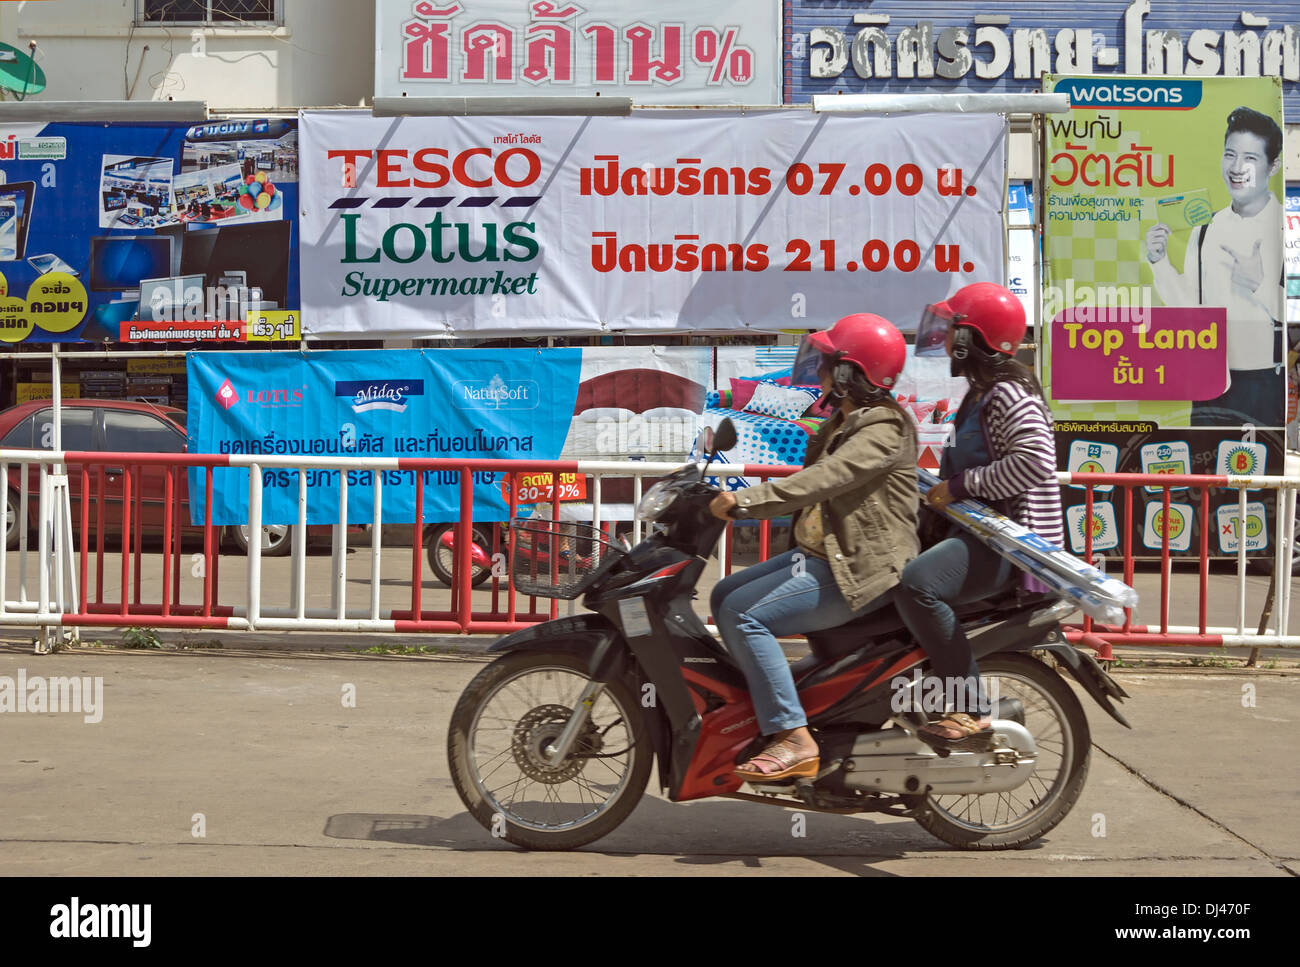 Deux femmes sur une moto passer un signe pour un supermarché Tesco Lotus, avec temps d'ouverture en thaï, à phetchabun, Thaïlande Banque D'Images